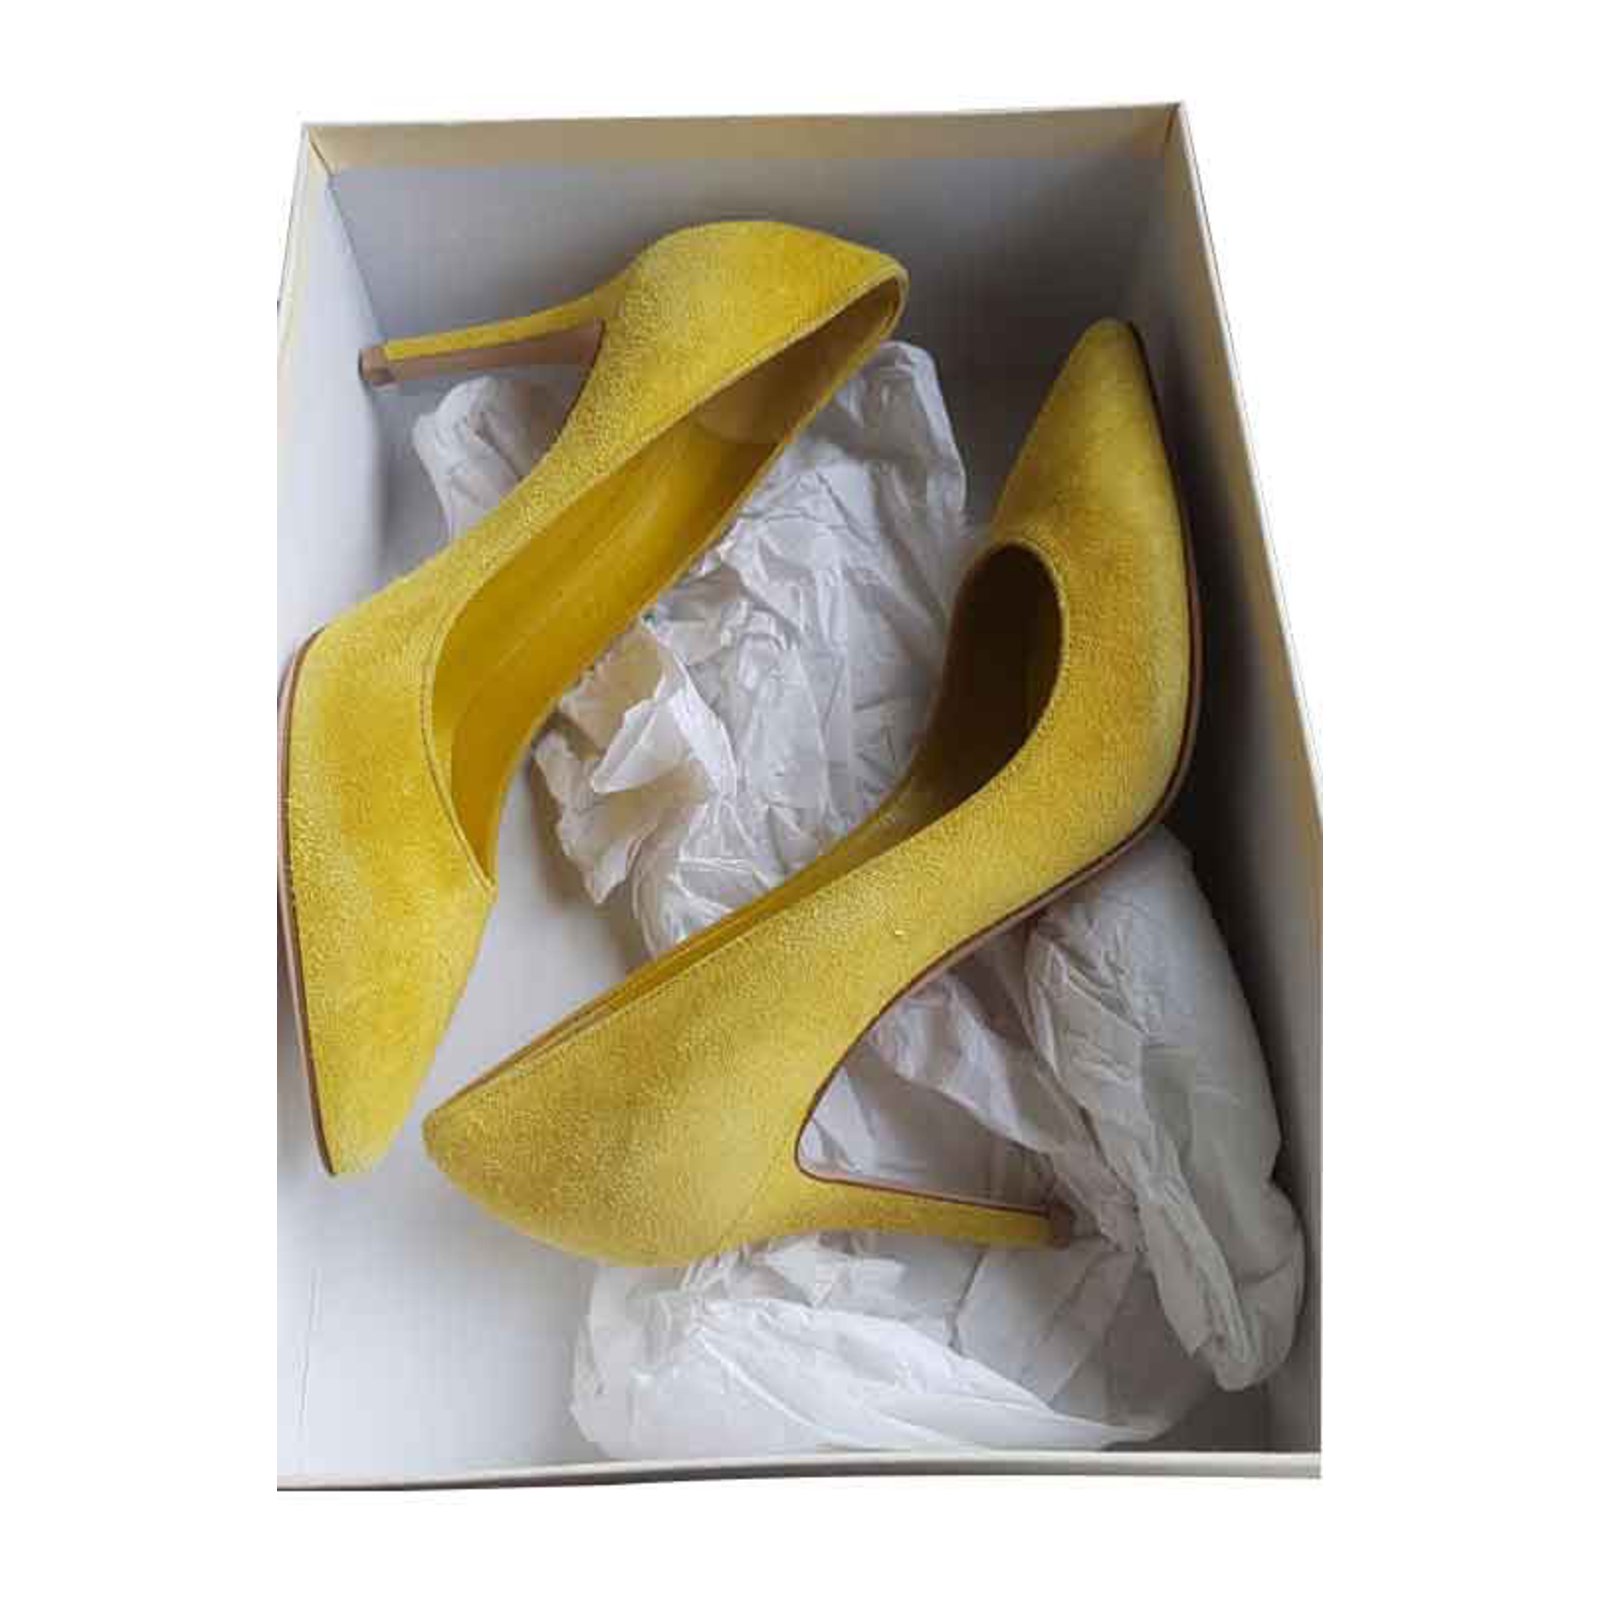 yellow suede heels